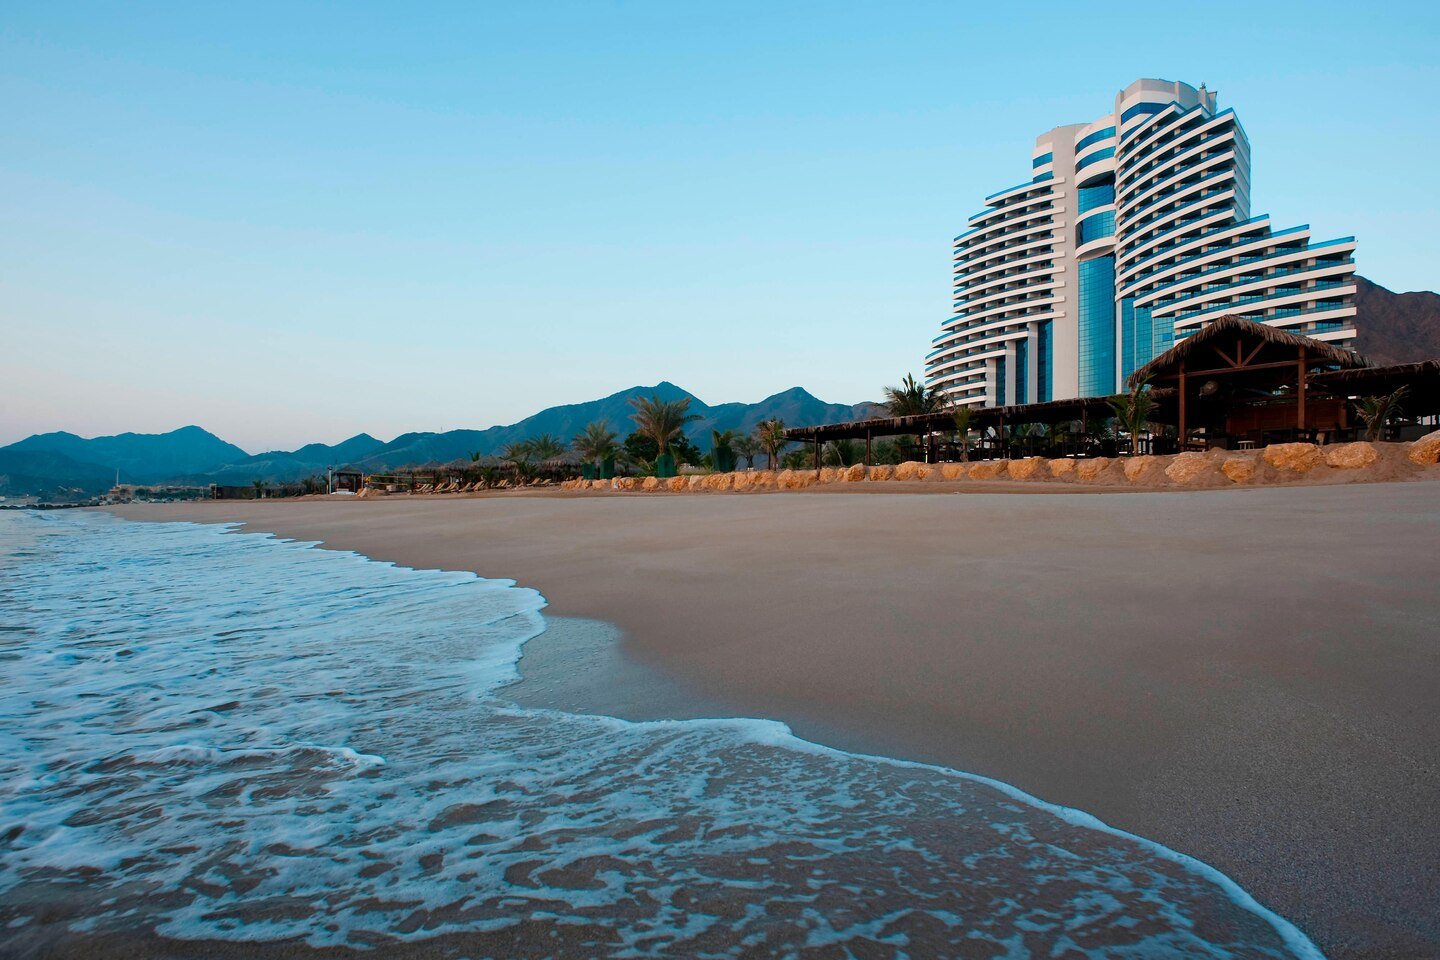 Отель le Meridien al Aqah Beach Resort 5. Le Meridien Фуджейра. Le Meridien al Aqah Beach Resort 5 ОАЭ Фуджейра. Отель Меридиан Фуджейра арабские эмираты.